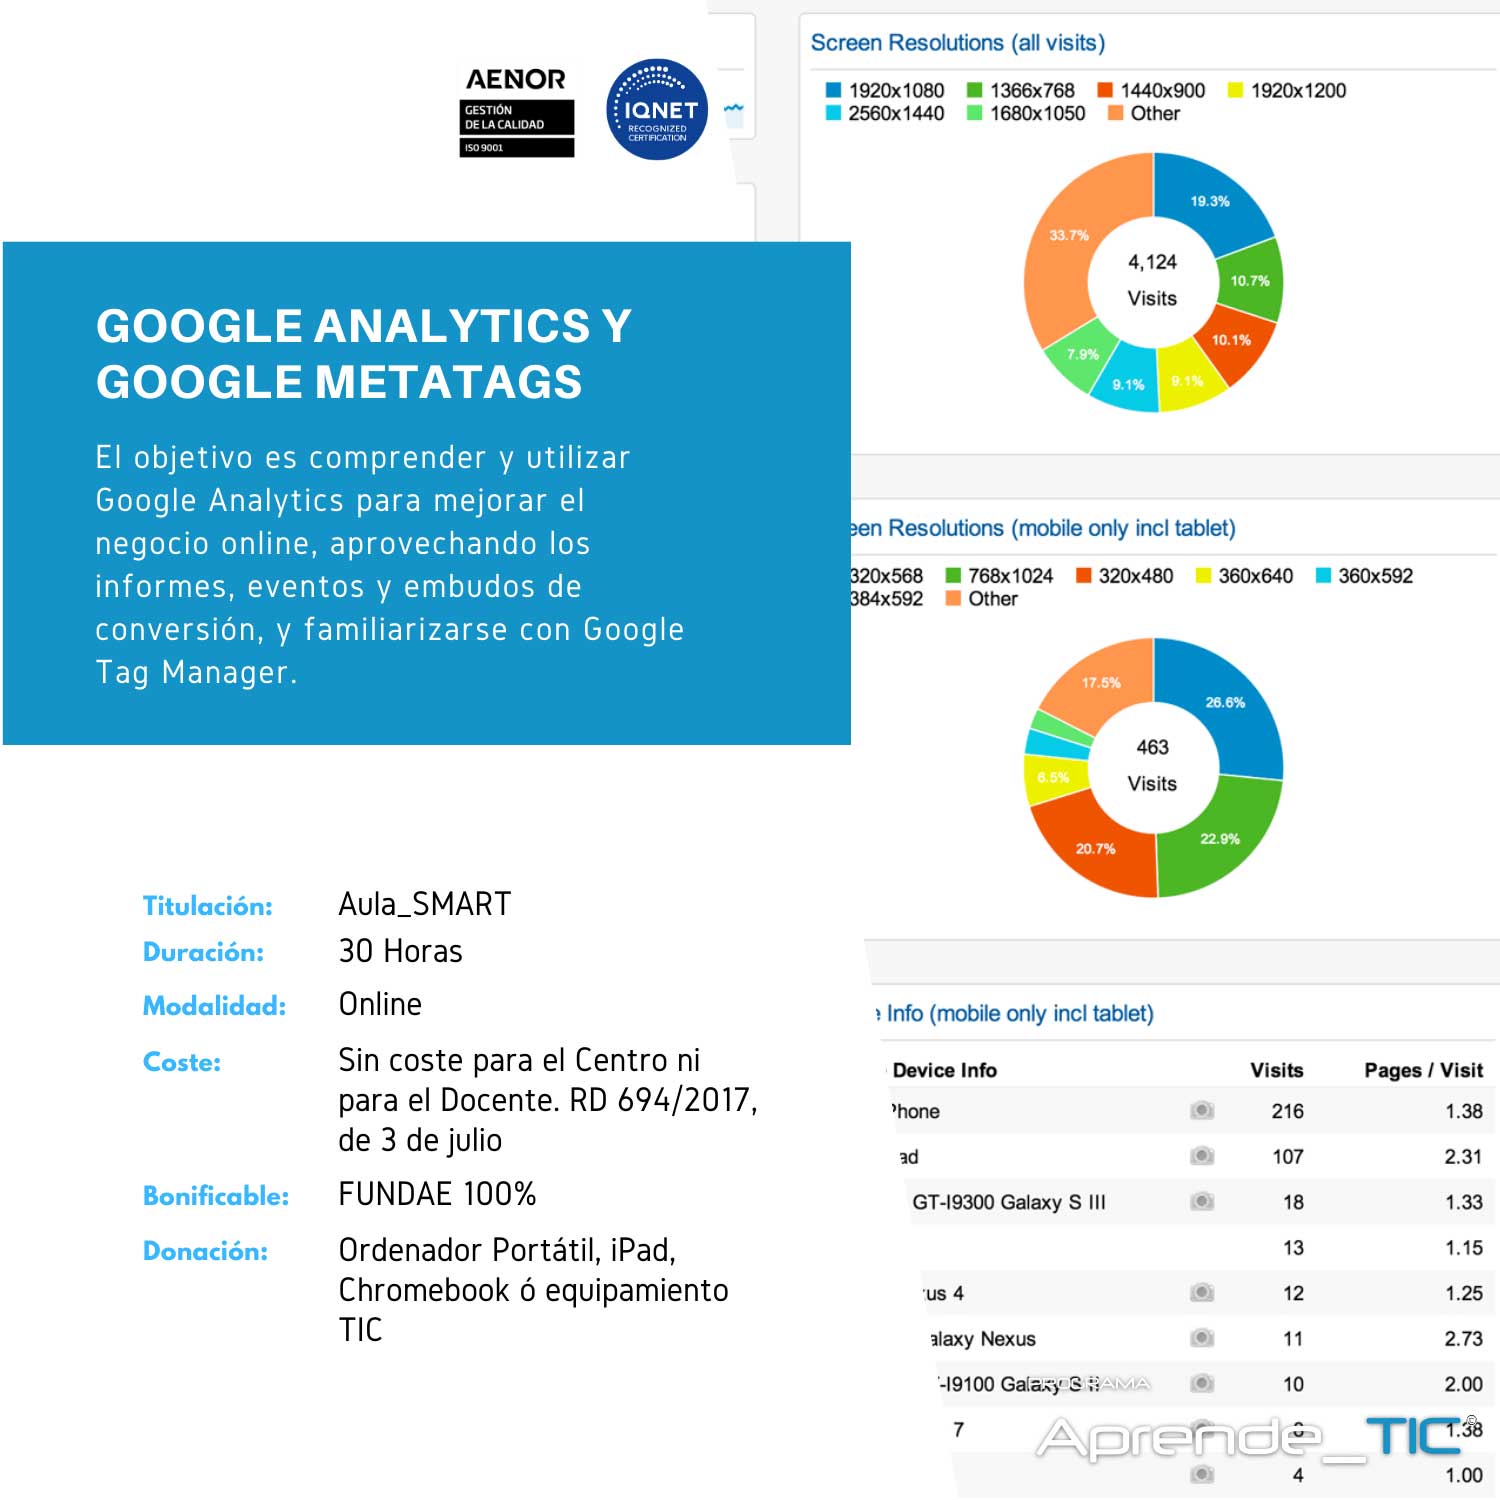 Google Analytic y Google Metatags